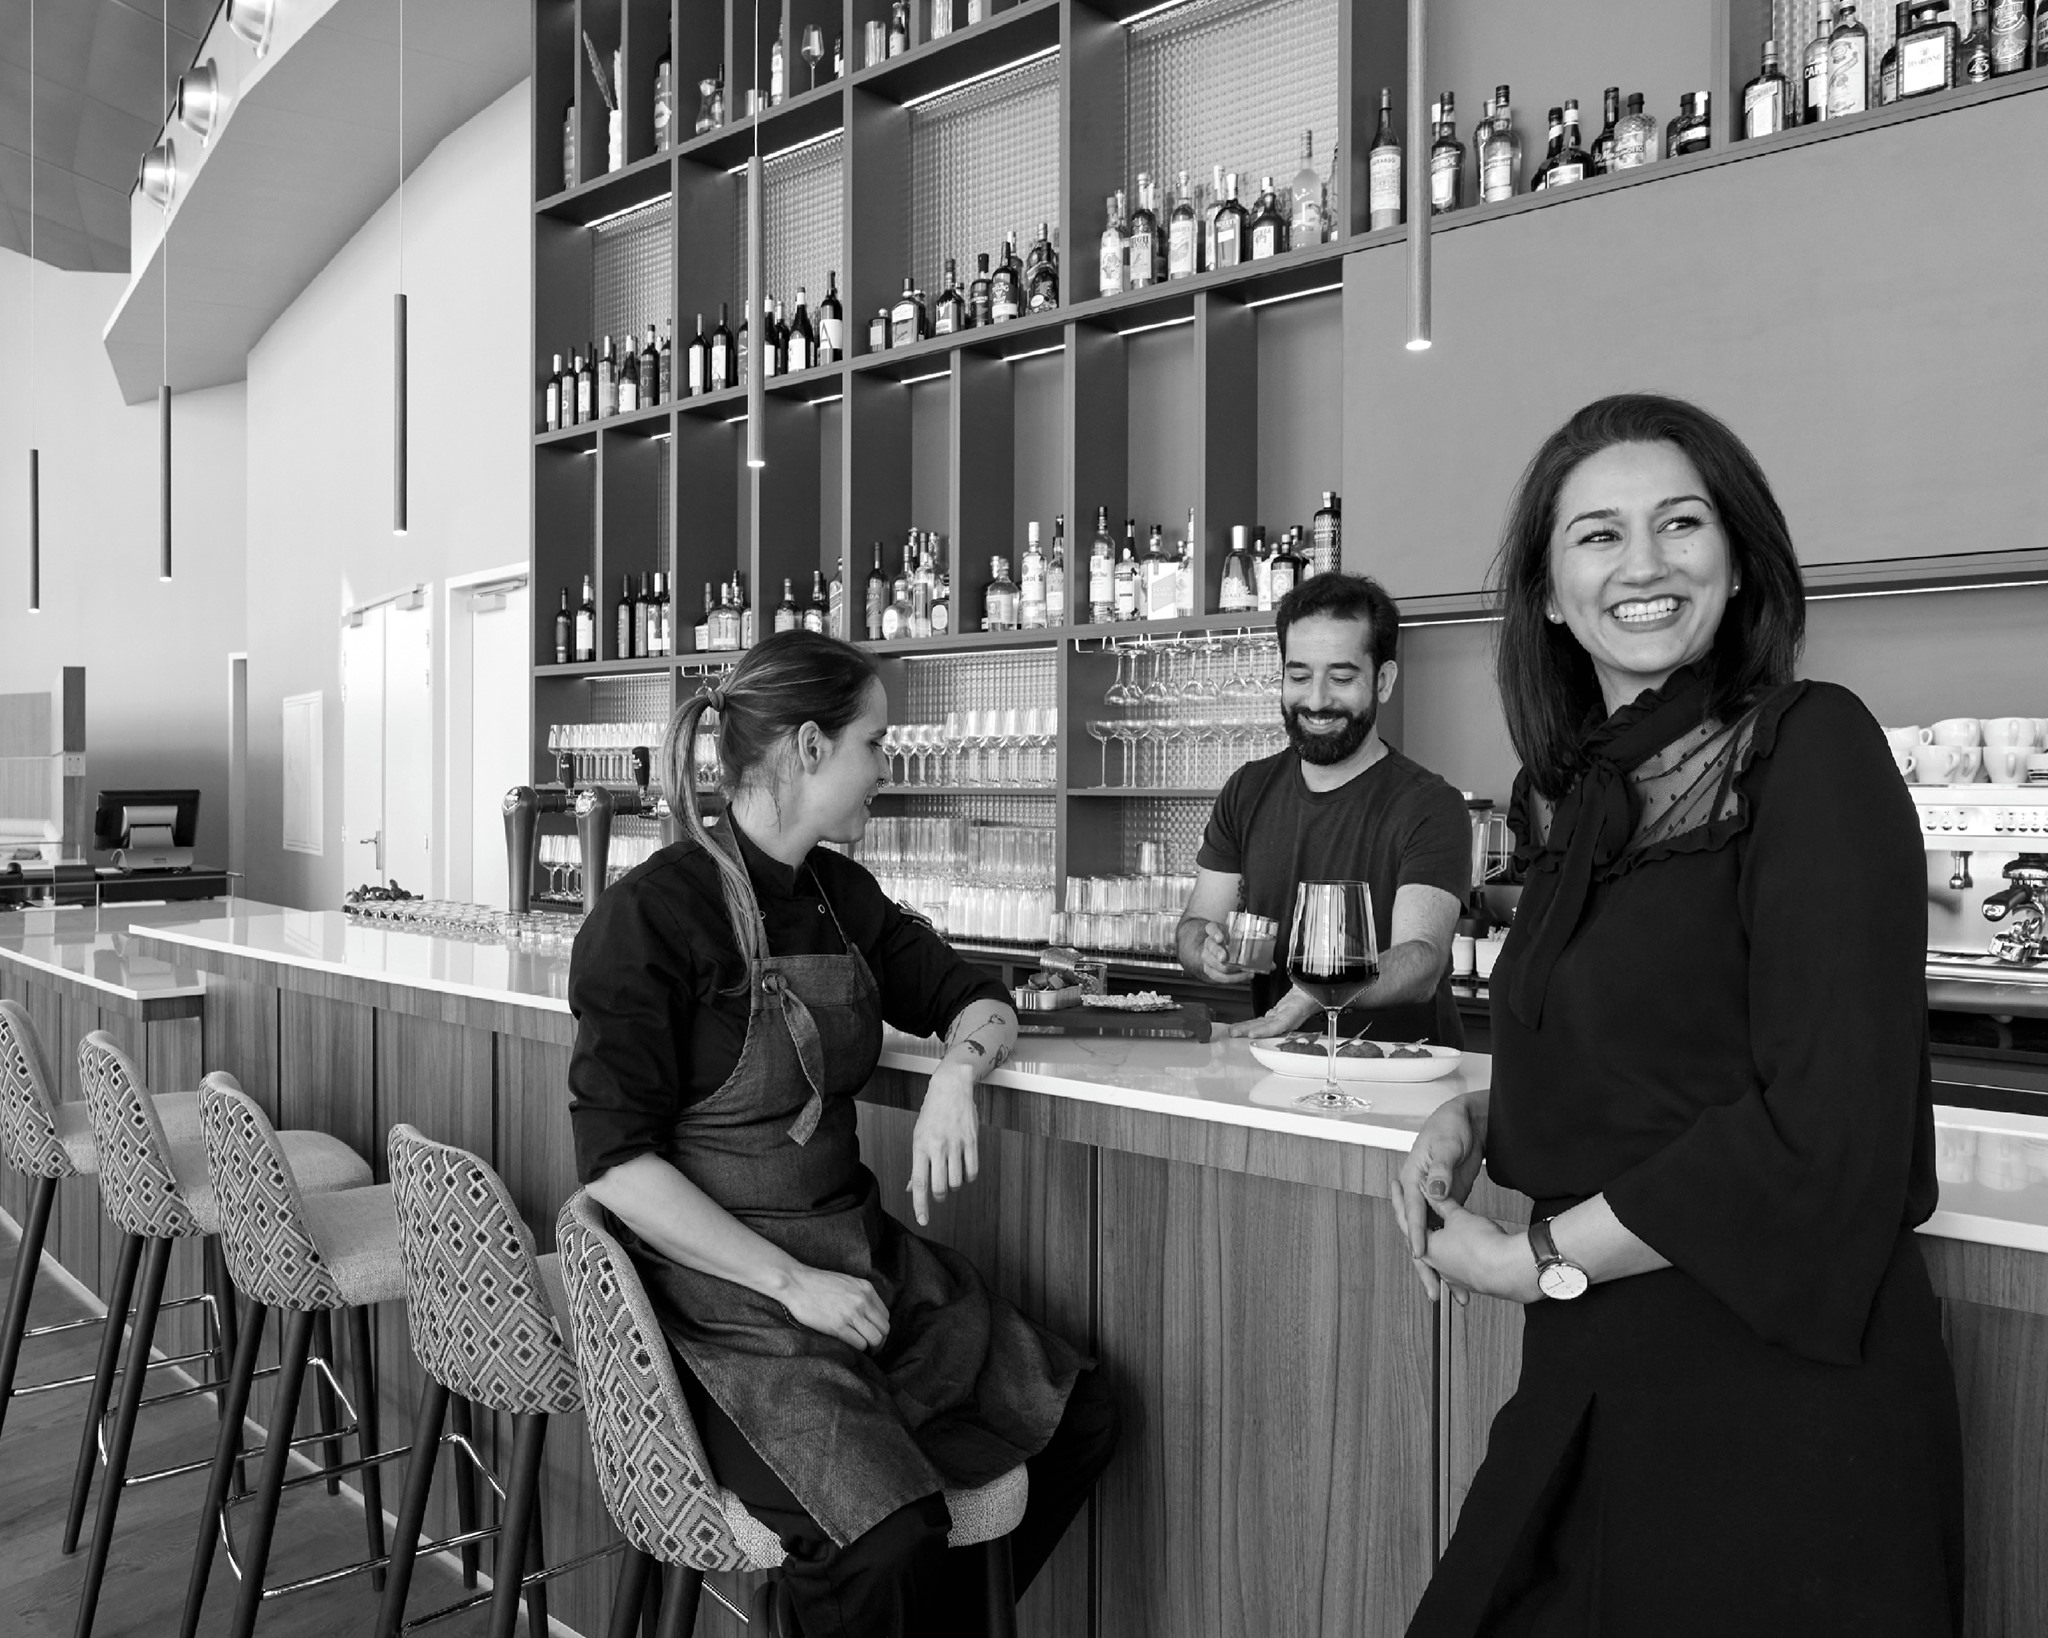 Mehrsa Ghadiri (rechts) met de executive chef (links) en de beverage chef (midden) van restaurant Cielo, foto door: Daniëlle Siobhán